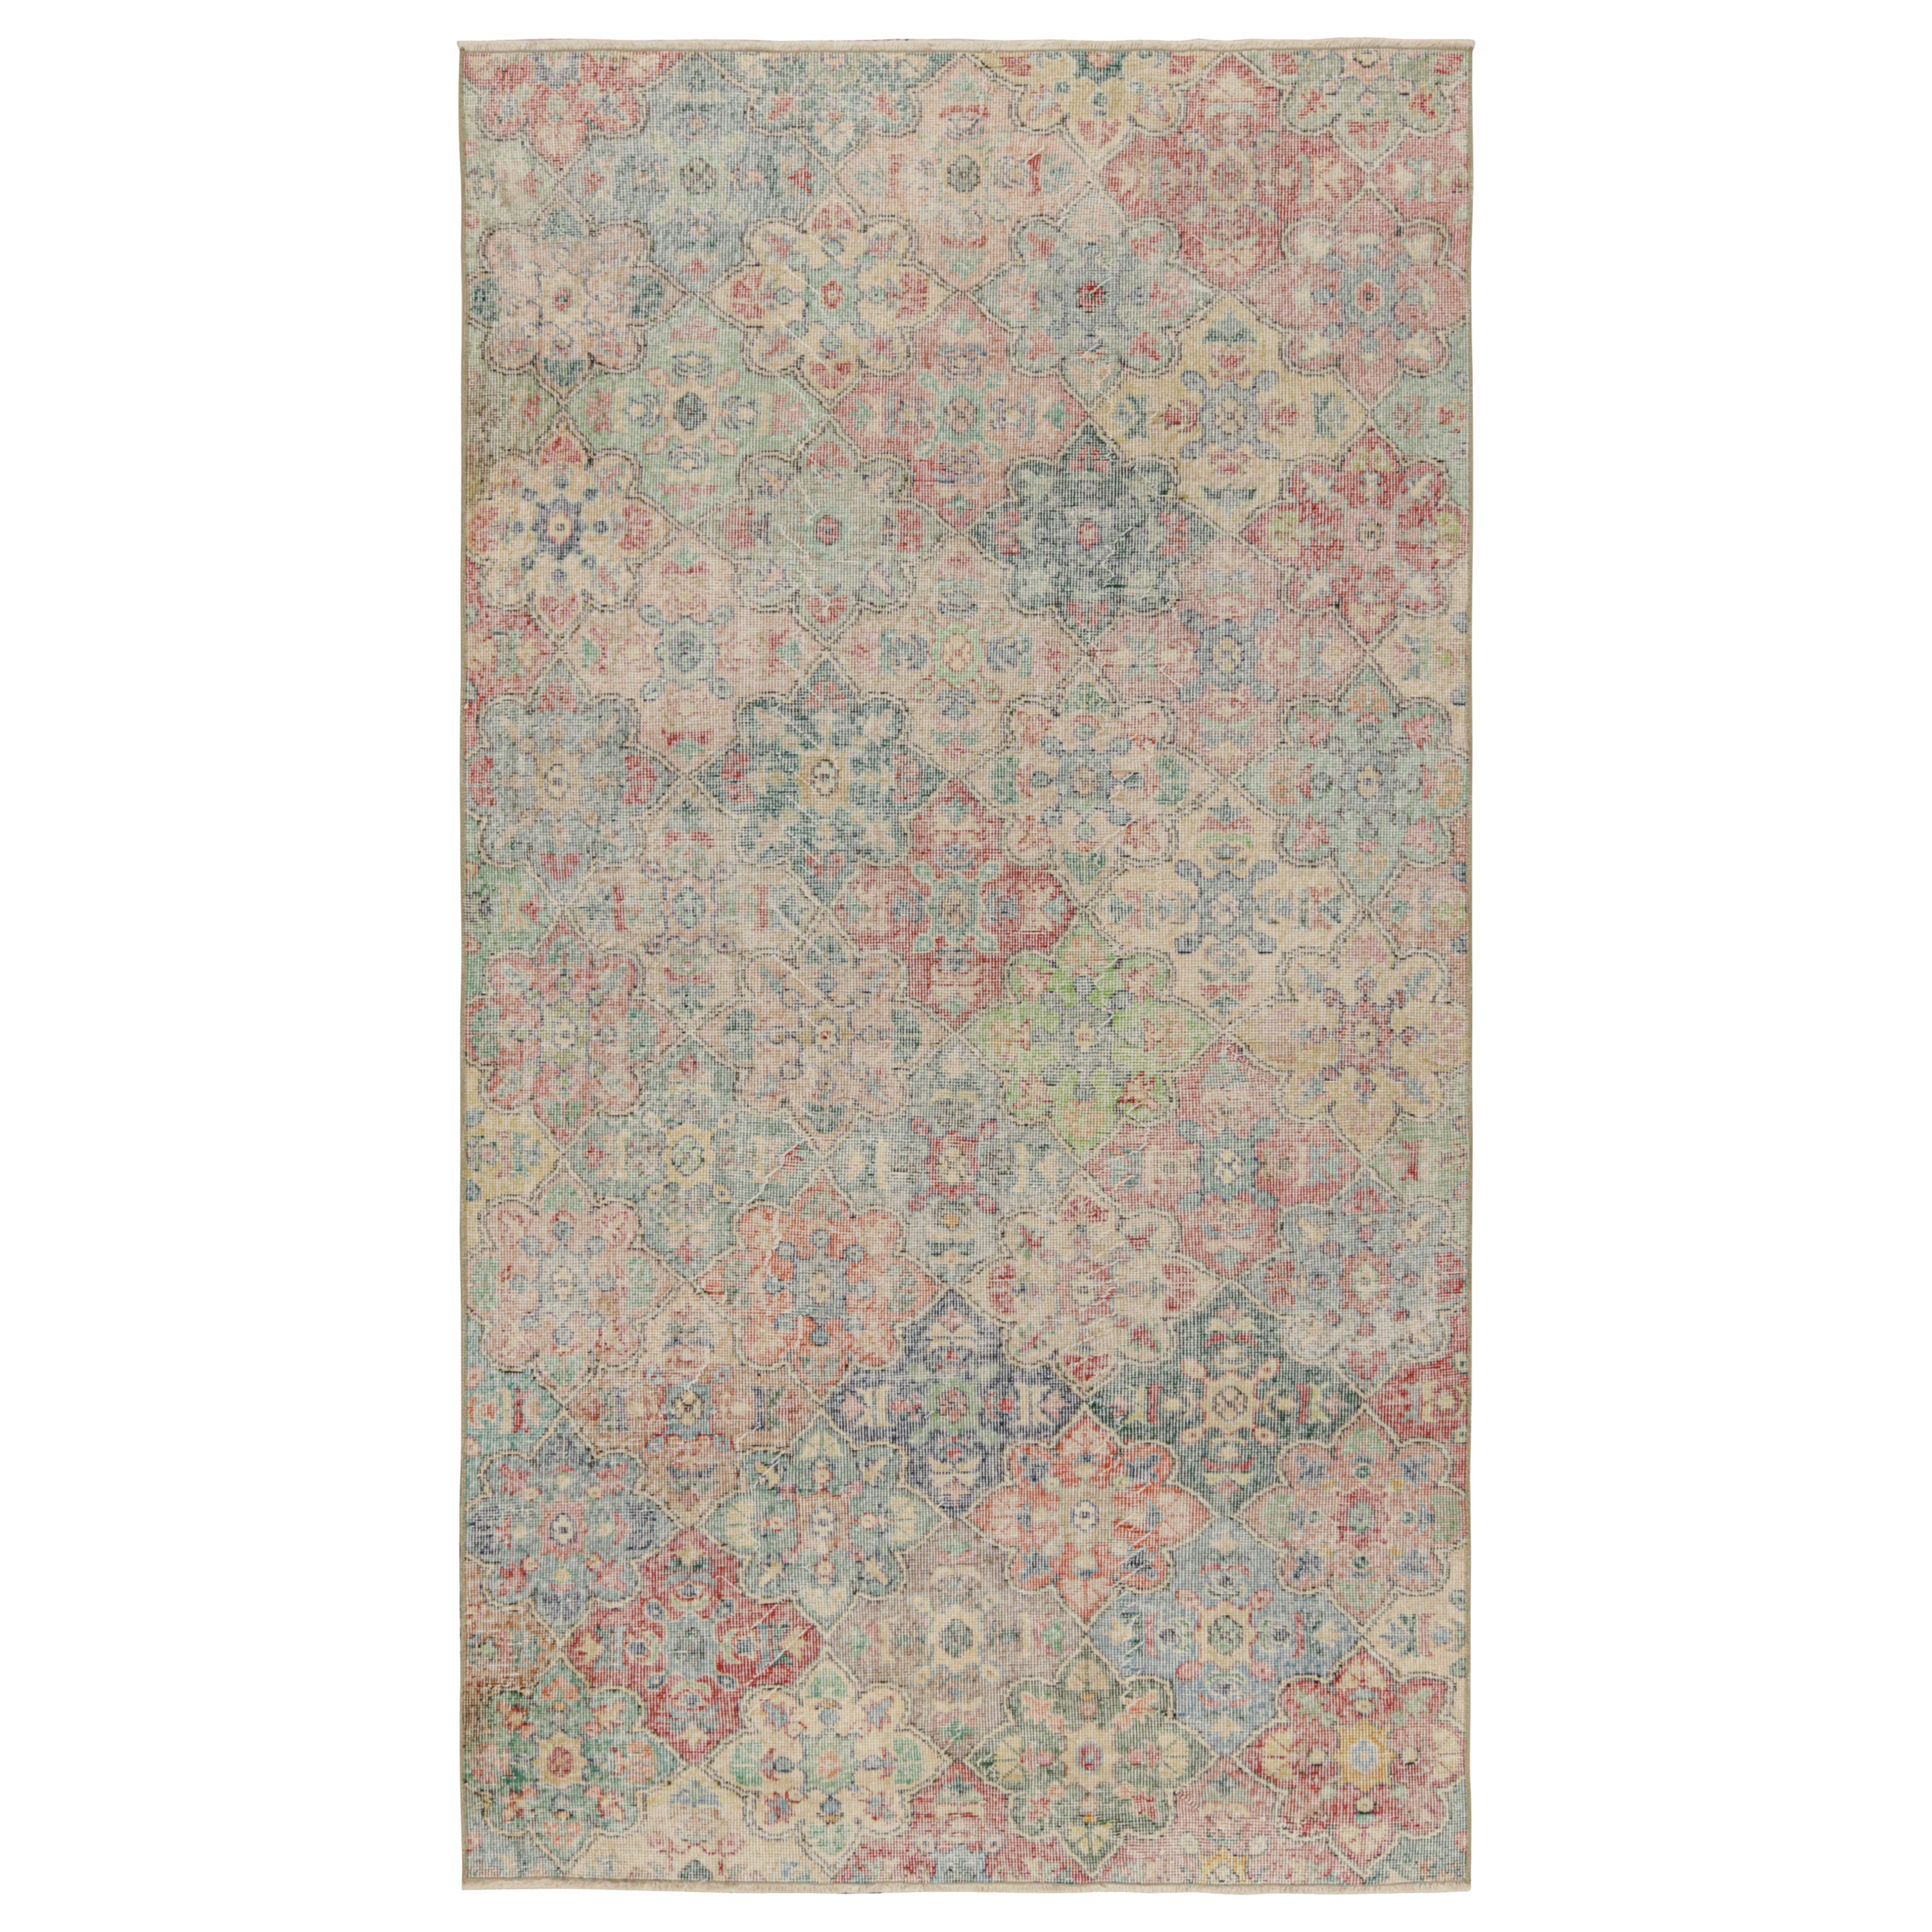 Vintage Zeki Müren Rug, with Geometric Floral Patterns, from Rug & Kilim For Sale